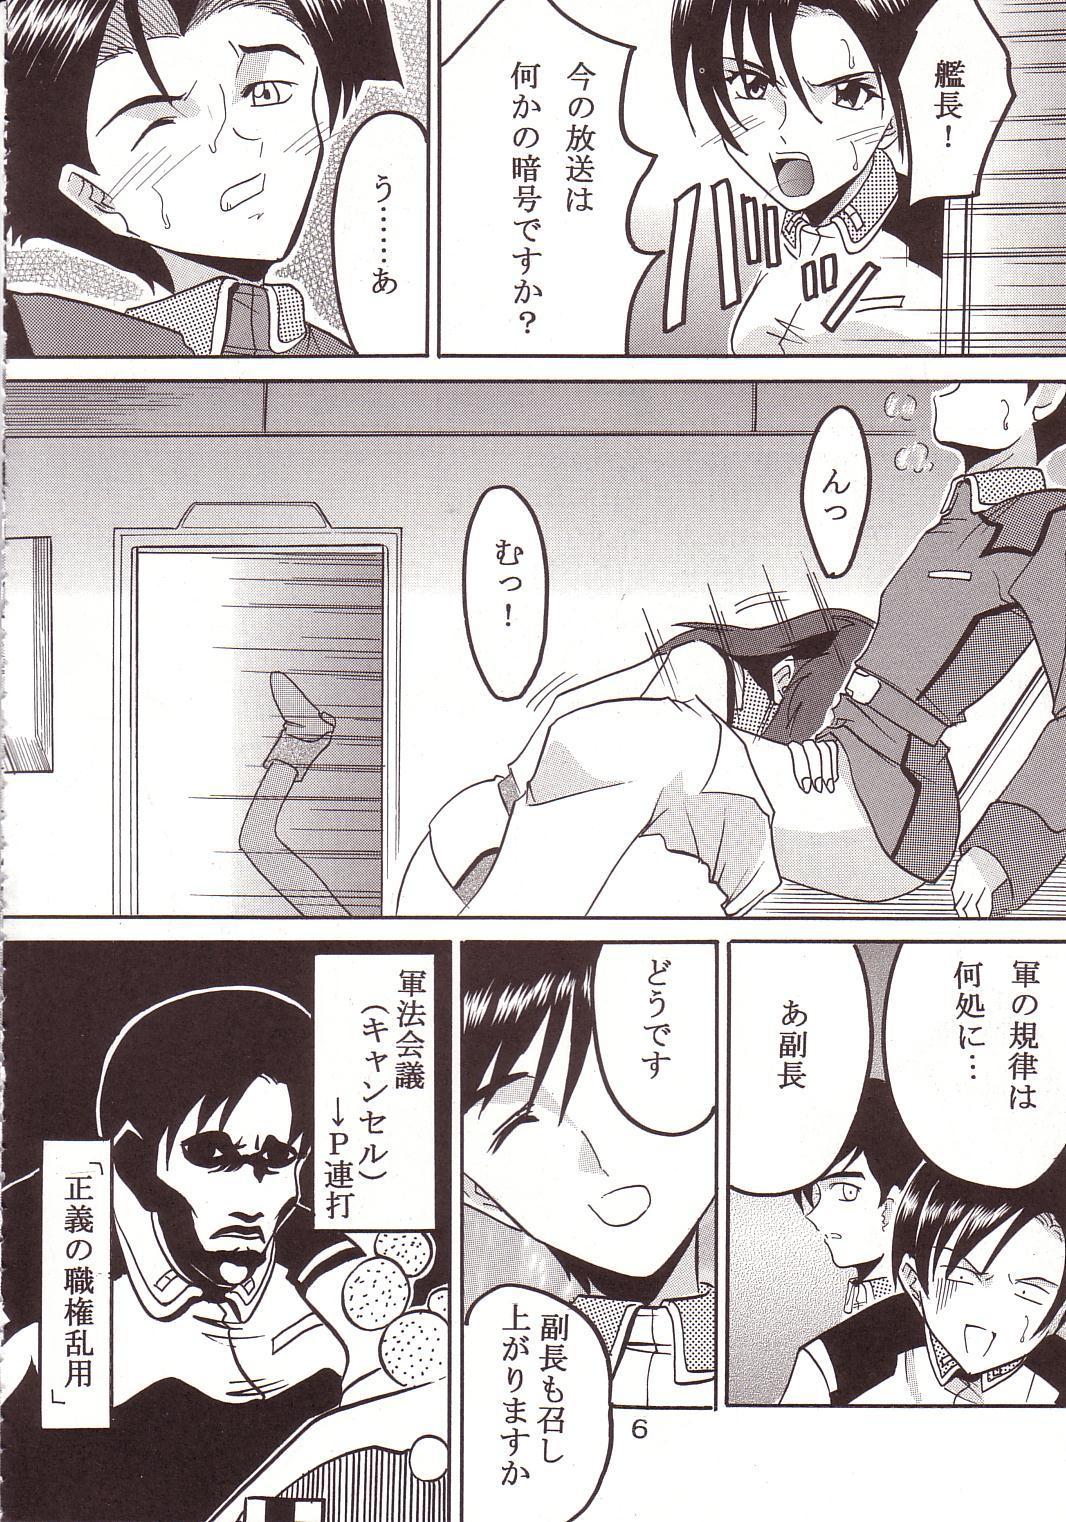 Gayhardcore SEED 3 - Gundam seed Scandal - Page 7